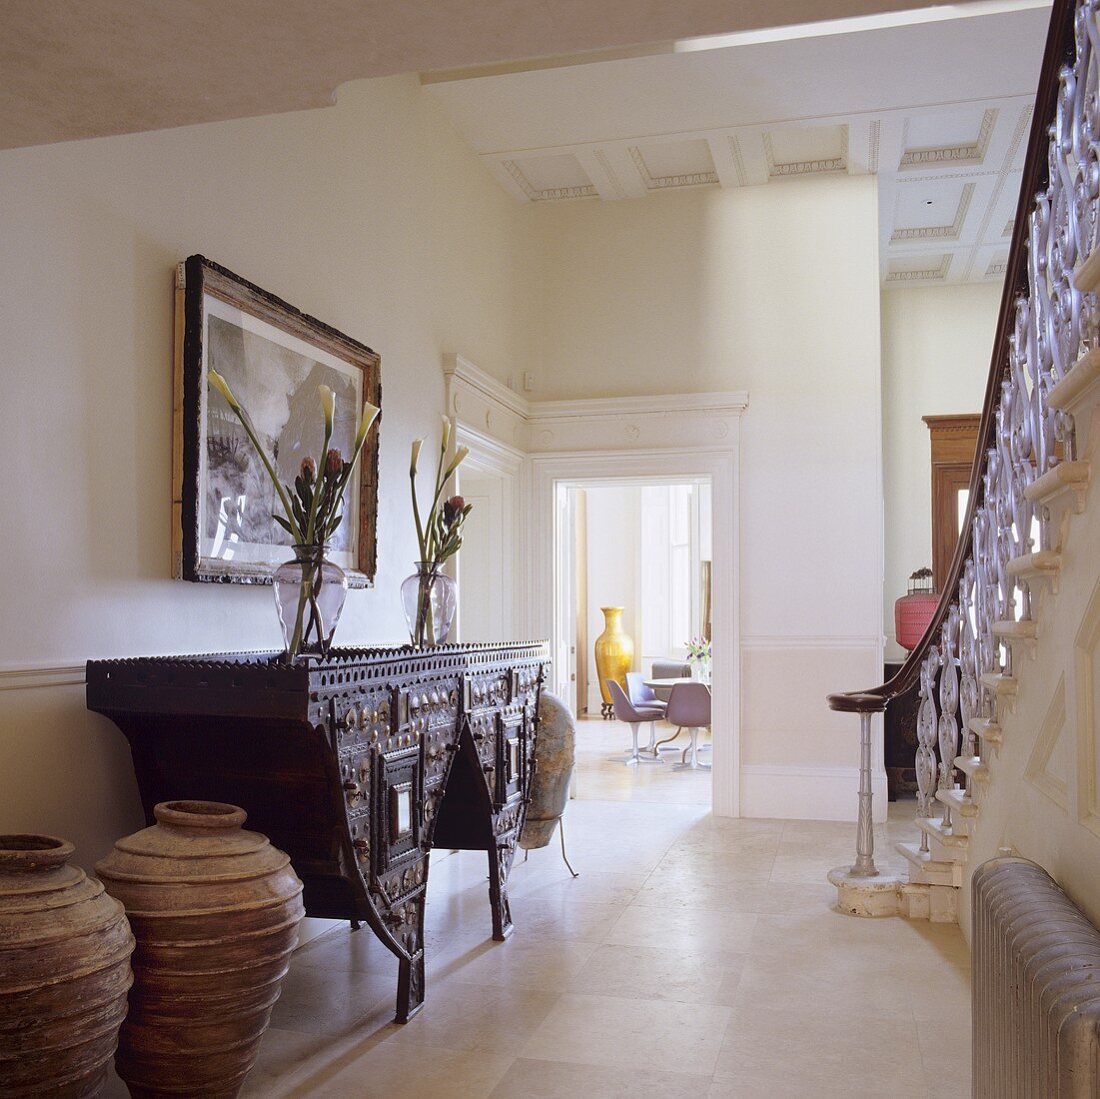 Antiker orientalischer Wandtisch im Treppenhaus einer Villa mit Blick in Wohnraum